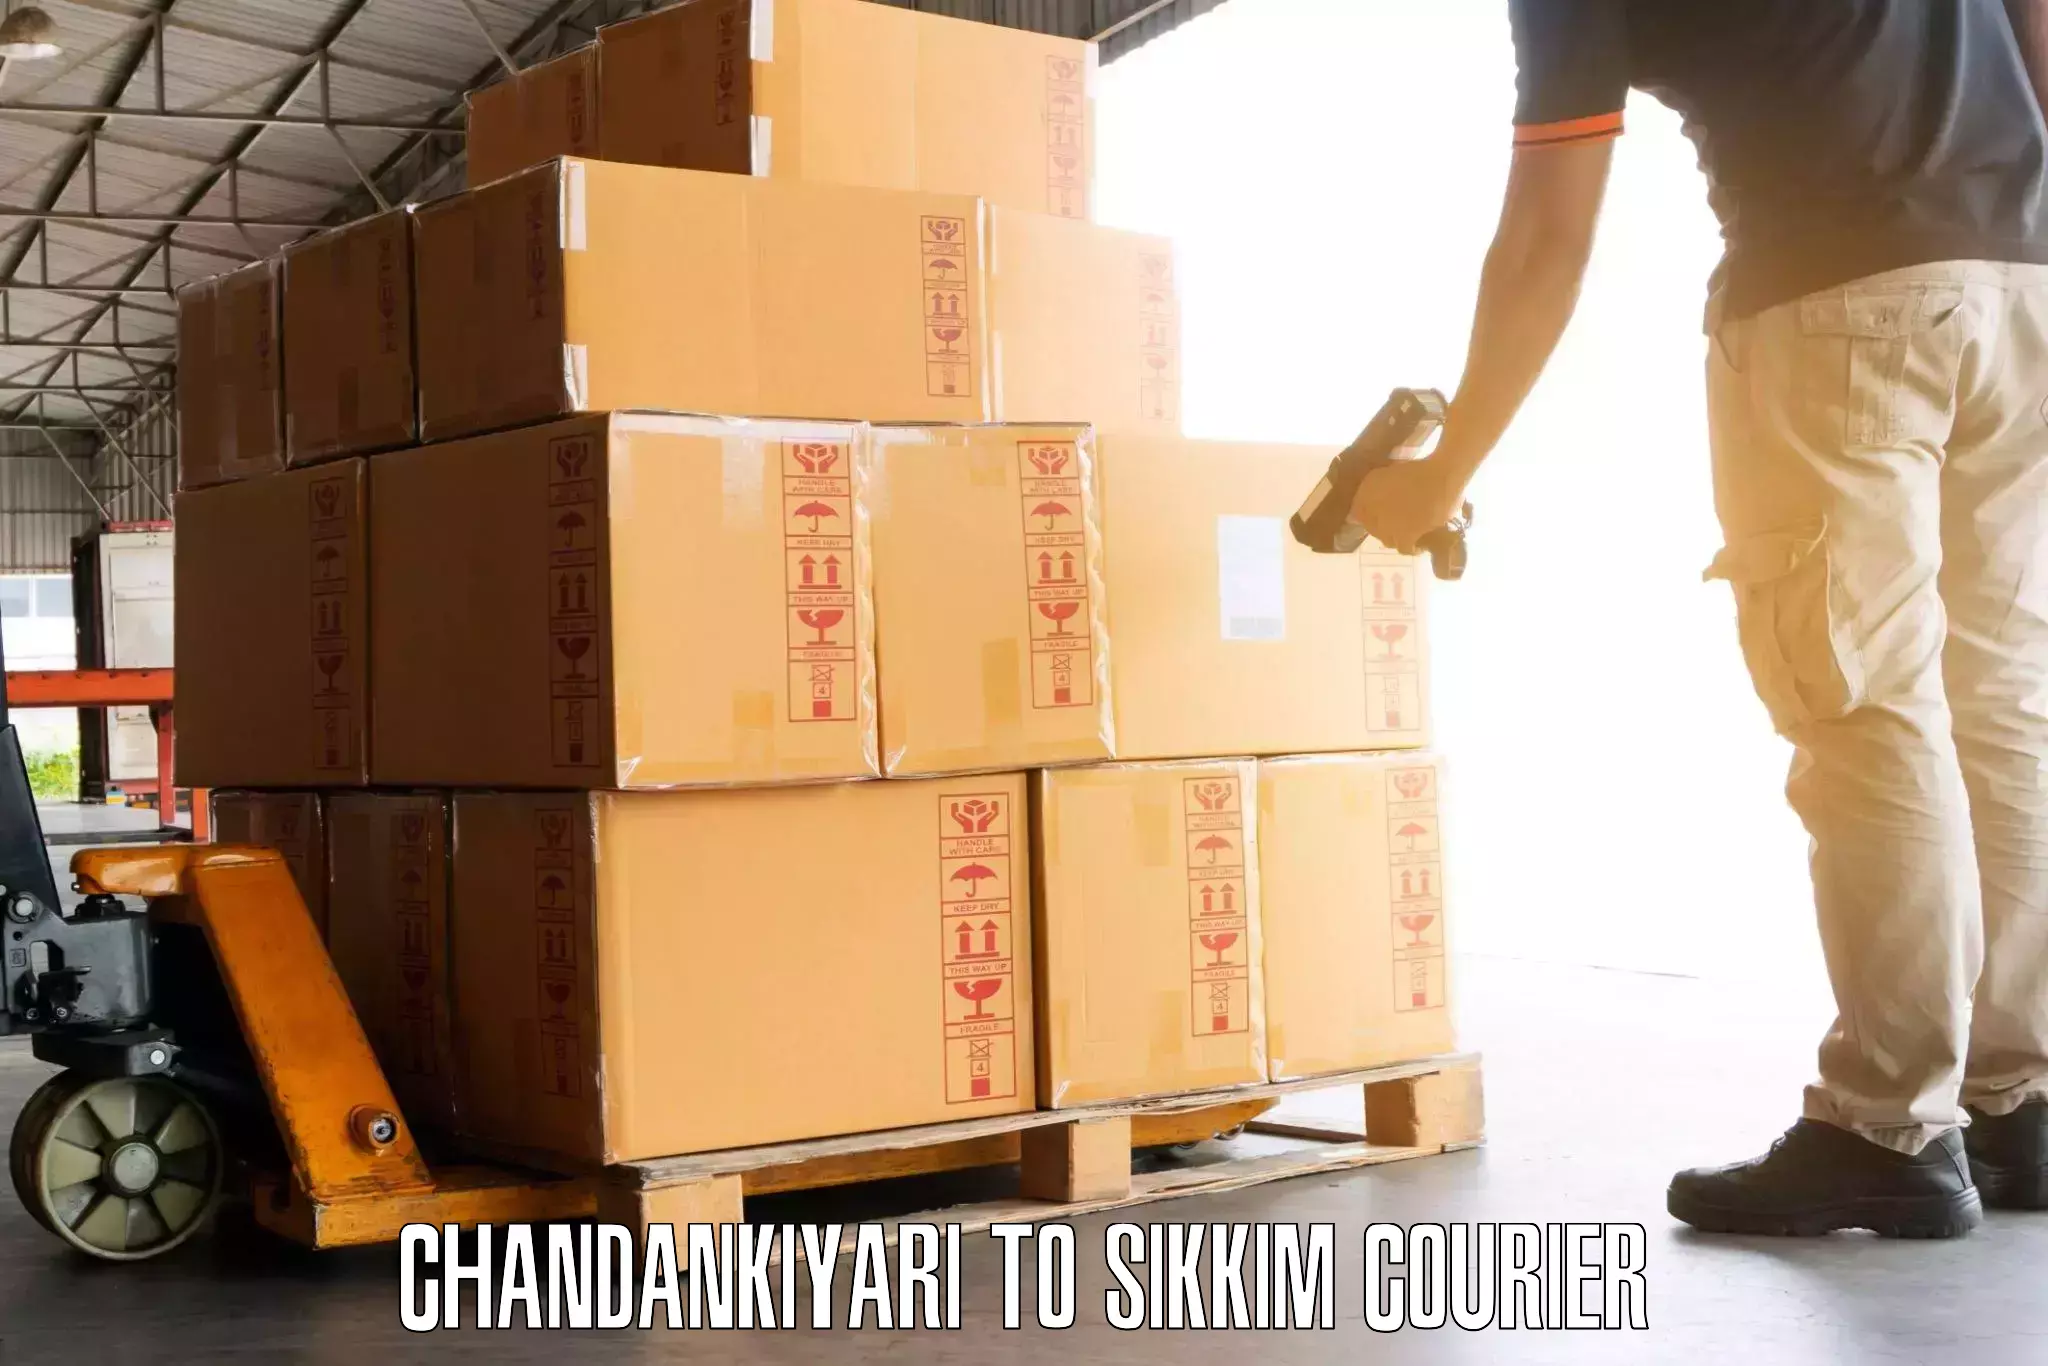 Luggage delivery network Chandankiyari to Sikkim